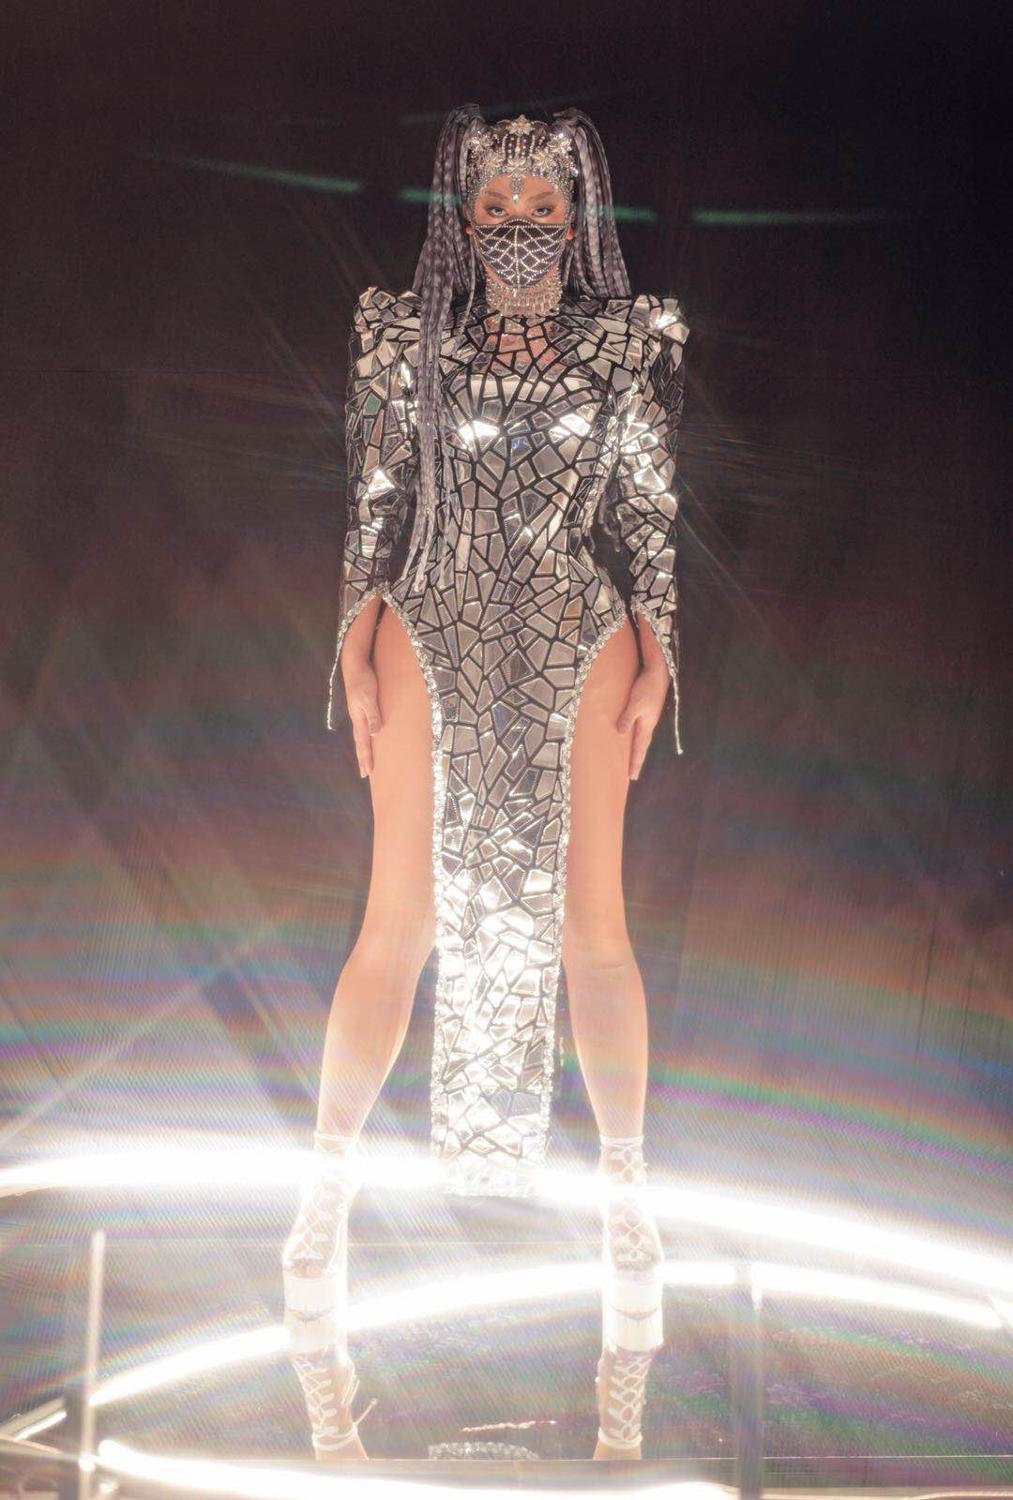 Nightclub Bar Reflective Costume Women Silver Laser Sequins Backless Slit Dress DJ Singer Dancer Performance Stage Wear